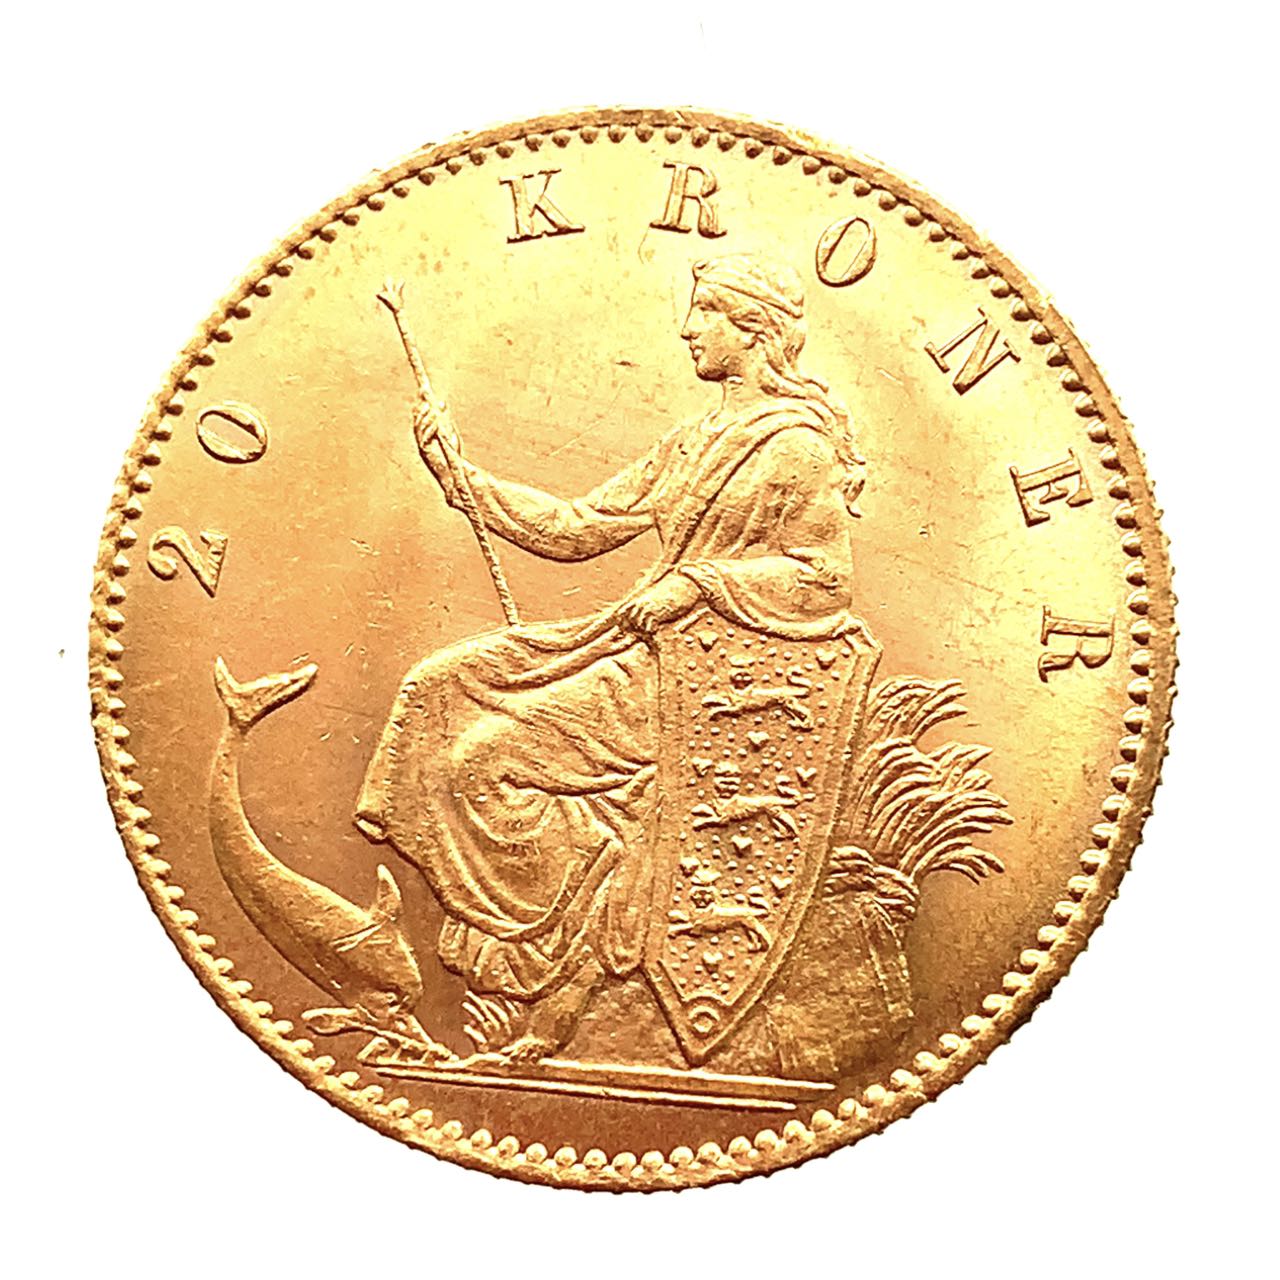 デンマーク クリスチャン9世 20クローネ金貨 1890年 21.6金 8.9g コイン イエローゴールド コレクション Gold 美品 2